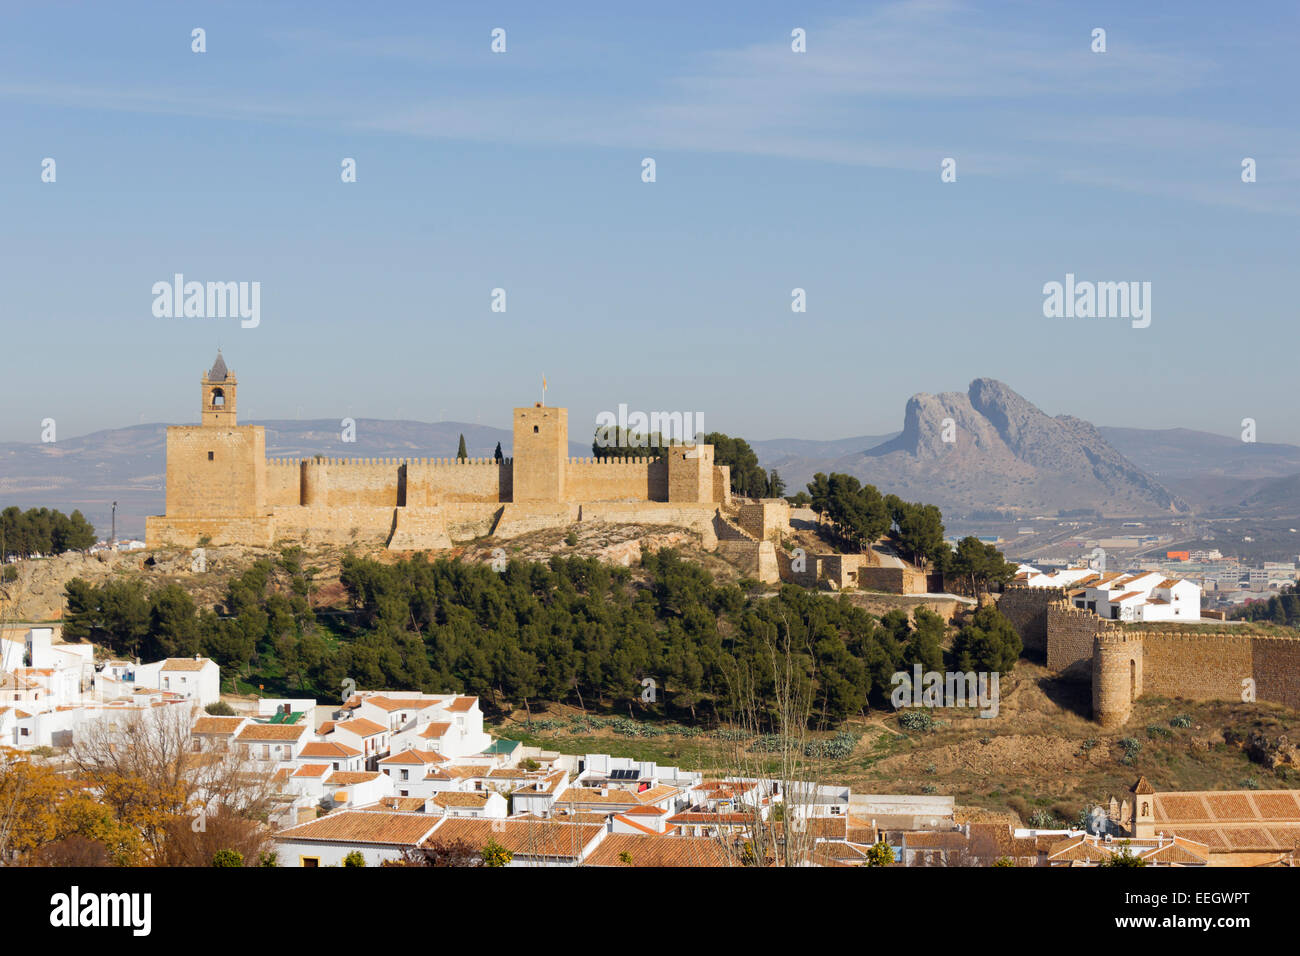 Antequera, Malaga, Andalucia, Spain. View of the Alcazaba with the Peña de los Enamorados or The Lover's Rock. Stock Photo